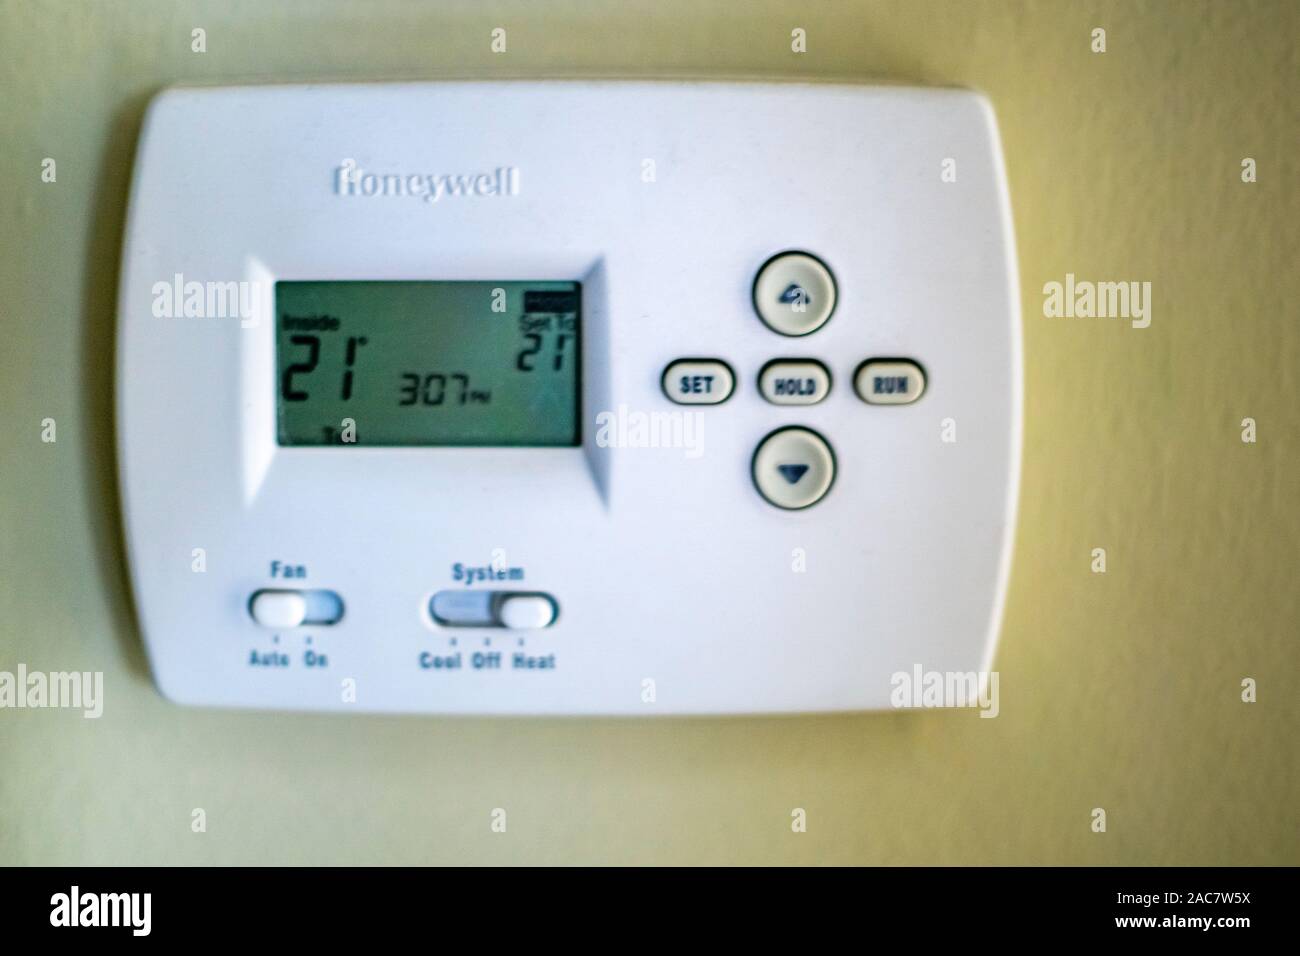 Ein Honeywell Thermostat für Home zentrale Heizung an der Wand befestigt  Stockfotografie - Alamy